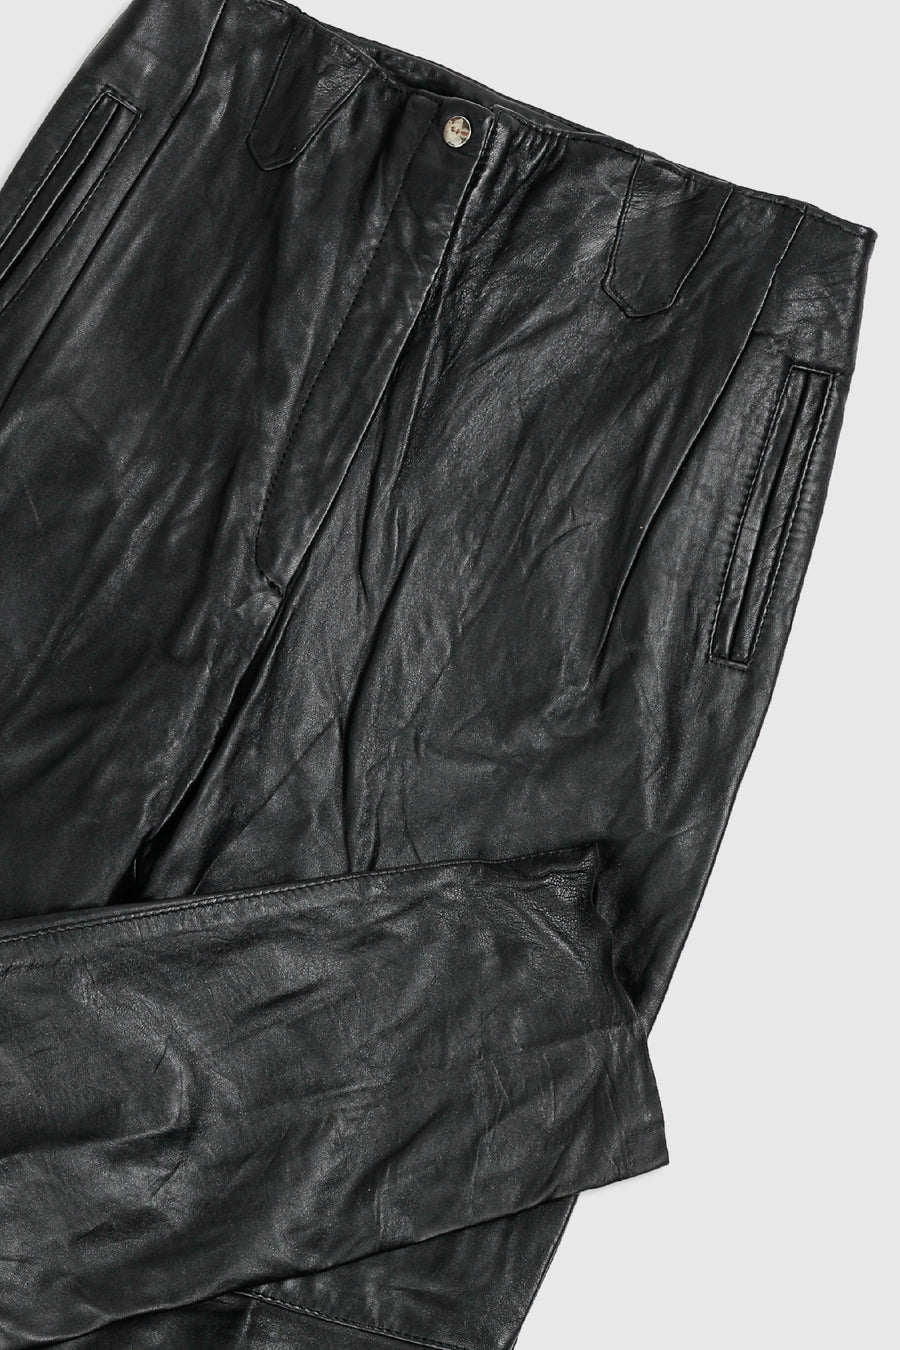 Vintage Leather Pants - Women's L